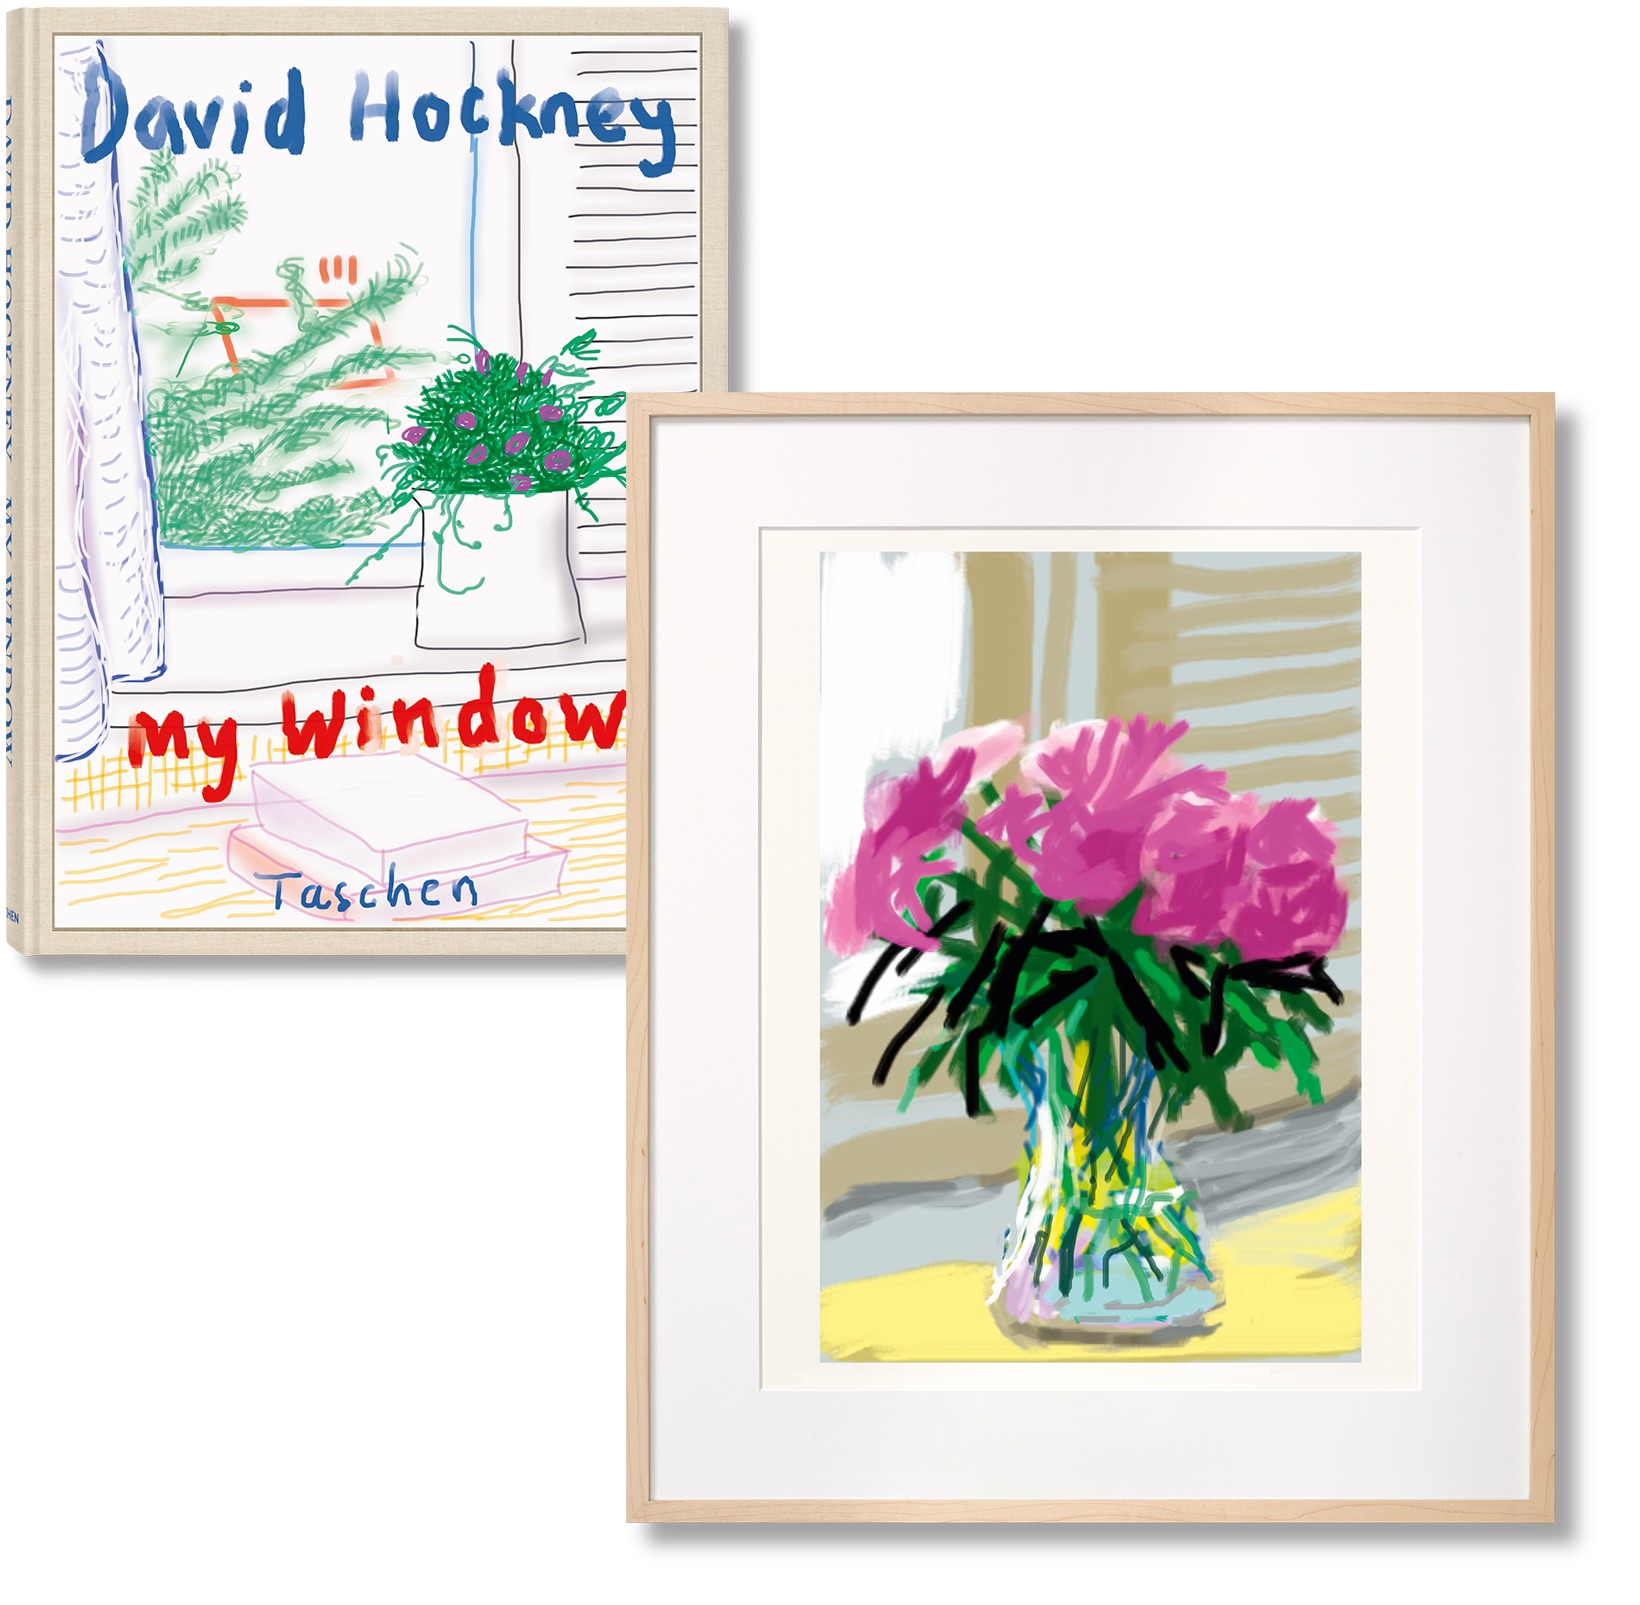 David Hockney - iPhone drawing ‘No. 535’, 28th June 2009 - 2019